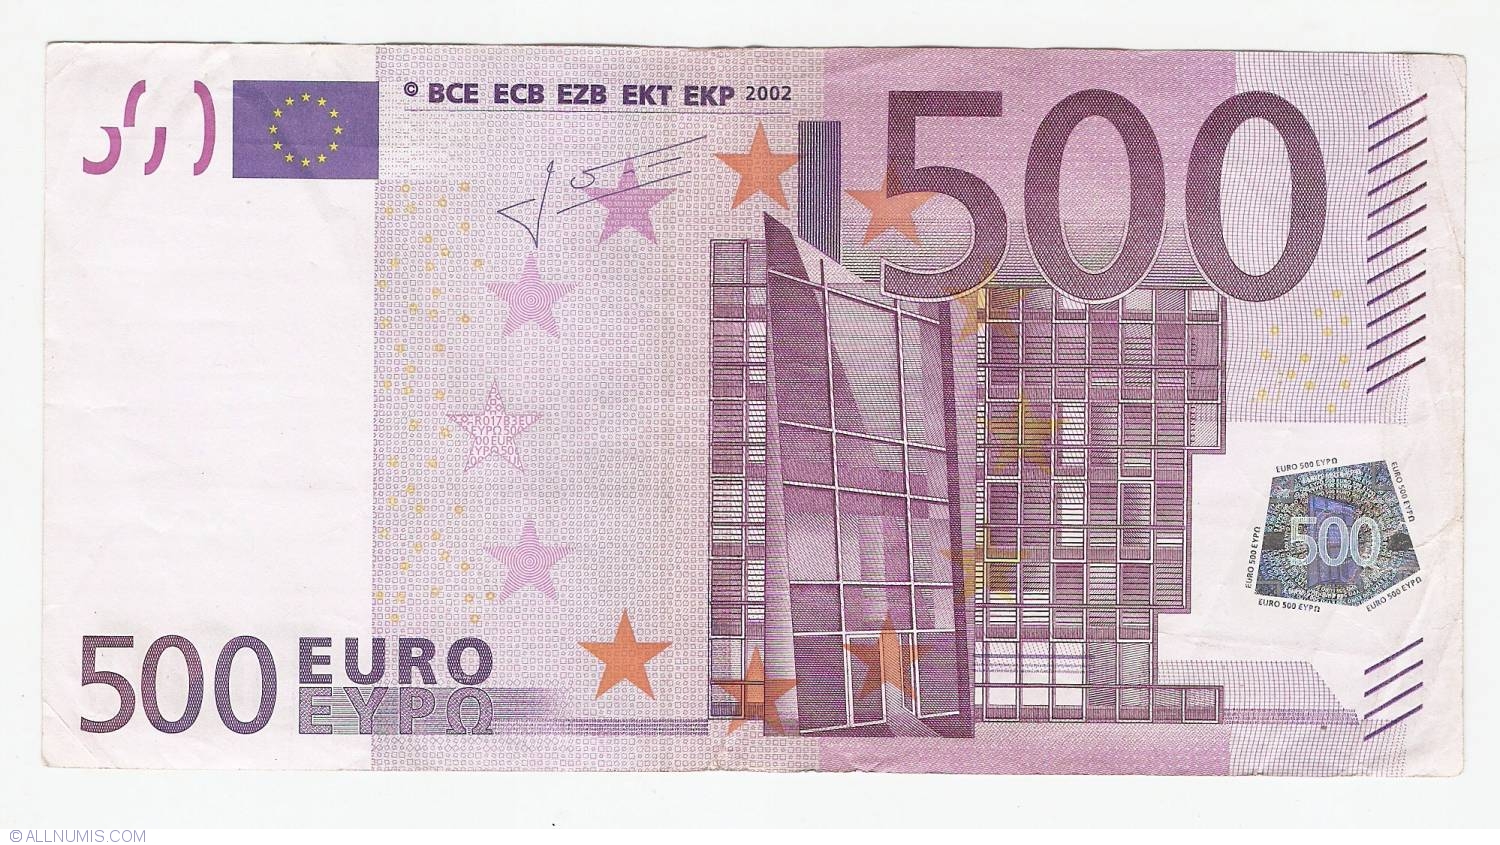 GrГ¶Гџe 500 Euro Schein